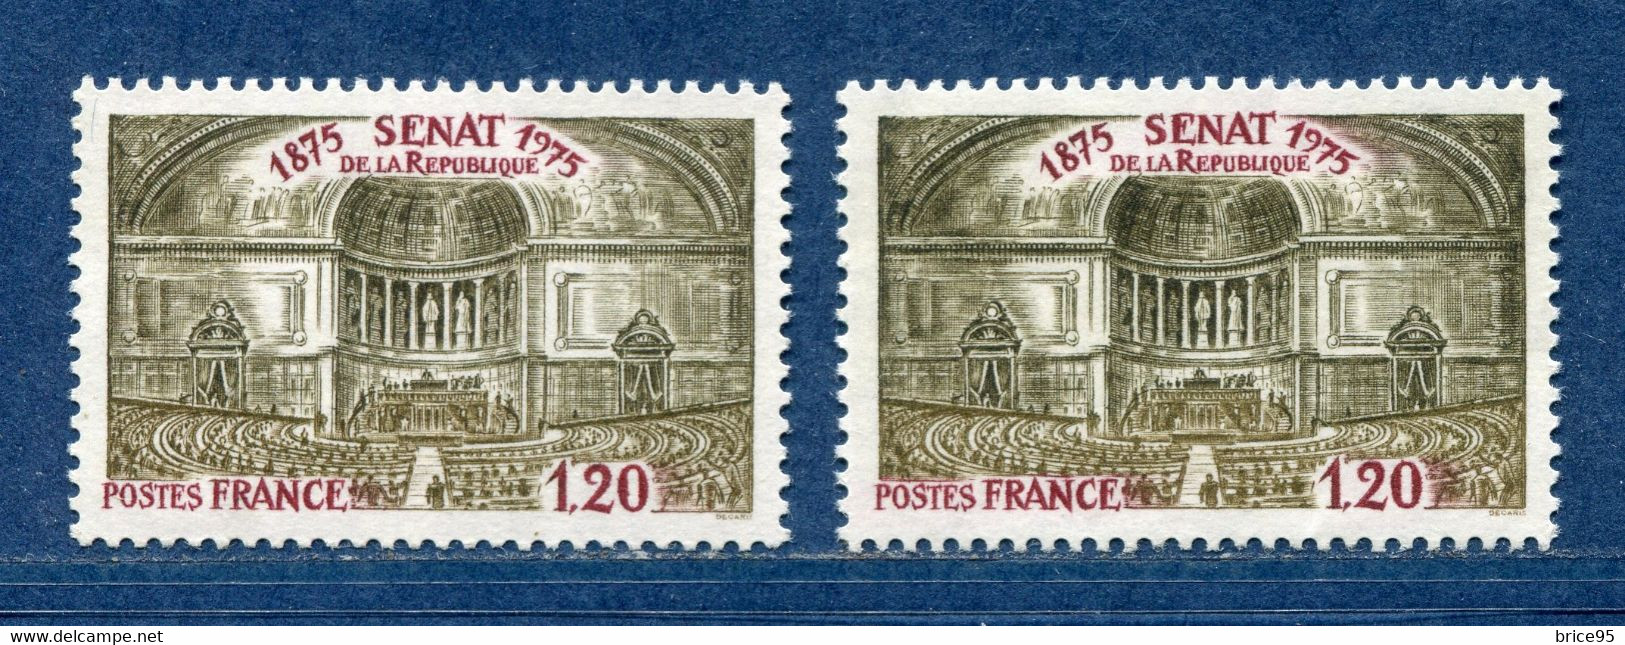 ⭐ France - Variété - YT N° 1843 - Couleurs - Pétouille - Neuf Sans Charnière - 1975 ⭐ - Unused Stamps